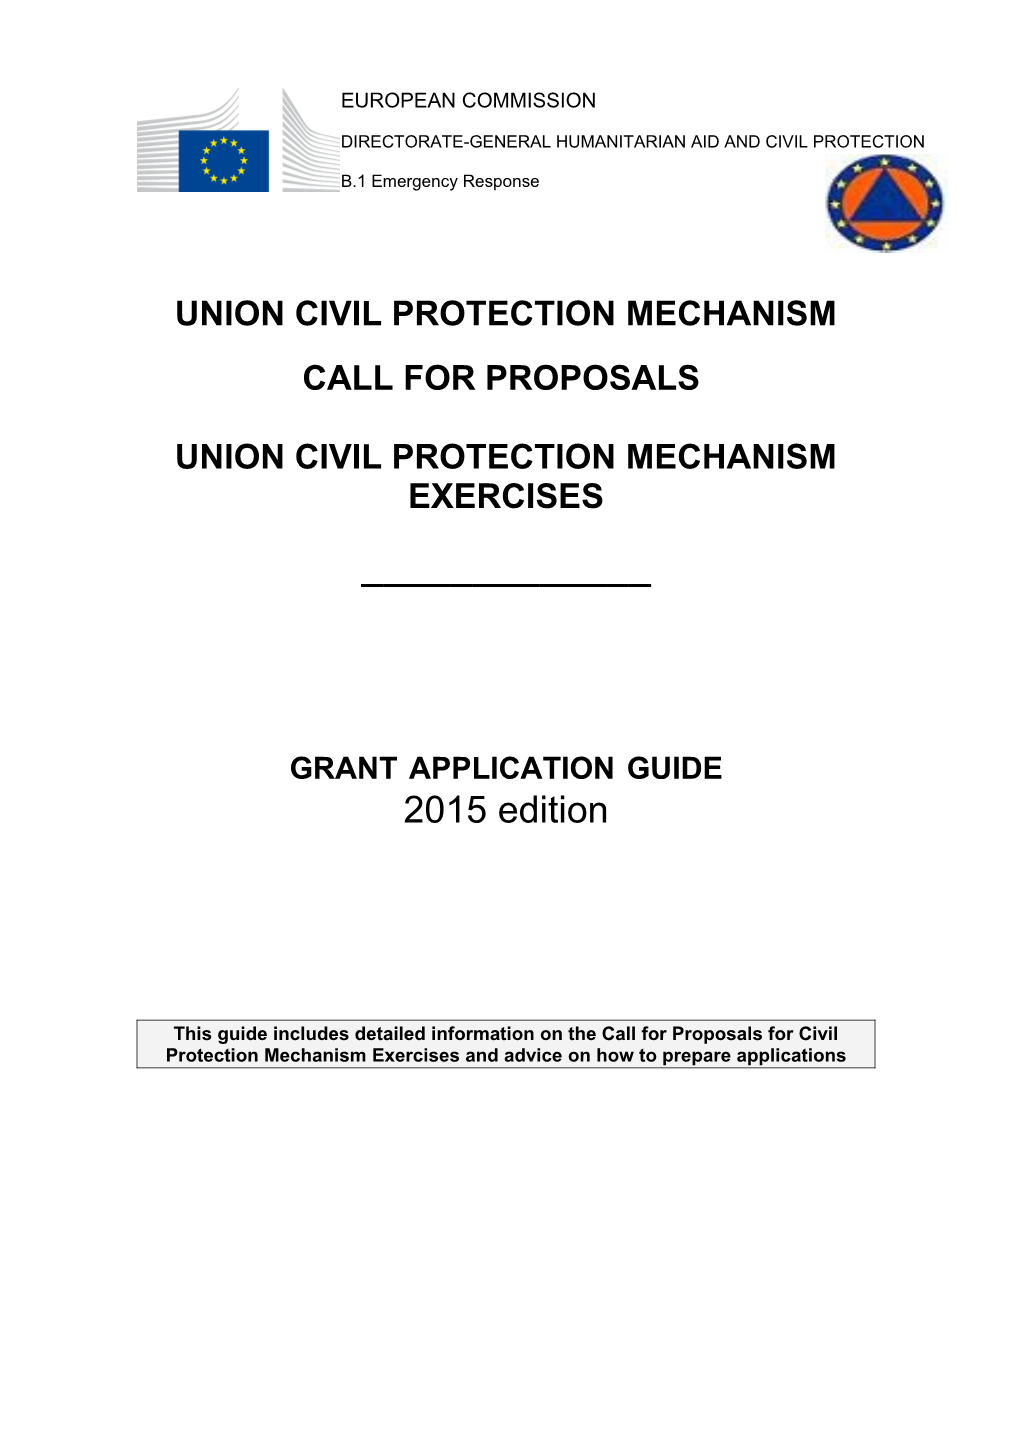 Union Civil Protection Mechanism Exercises